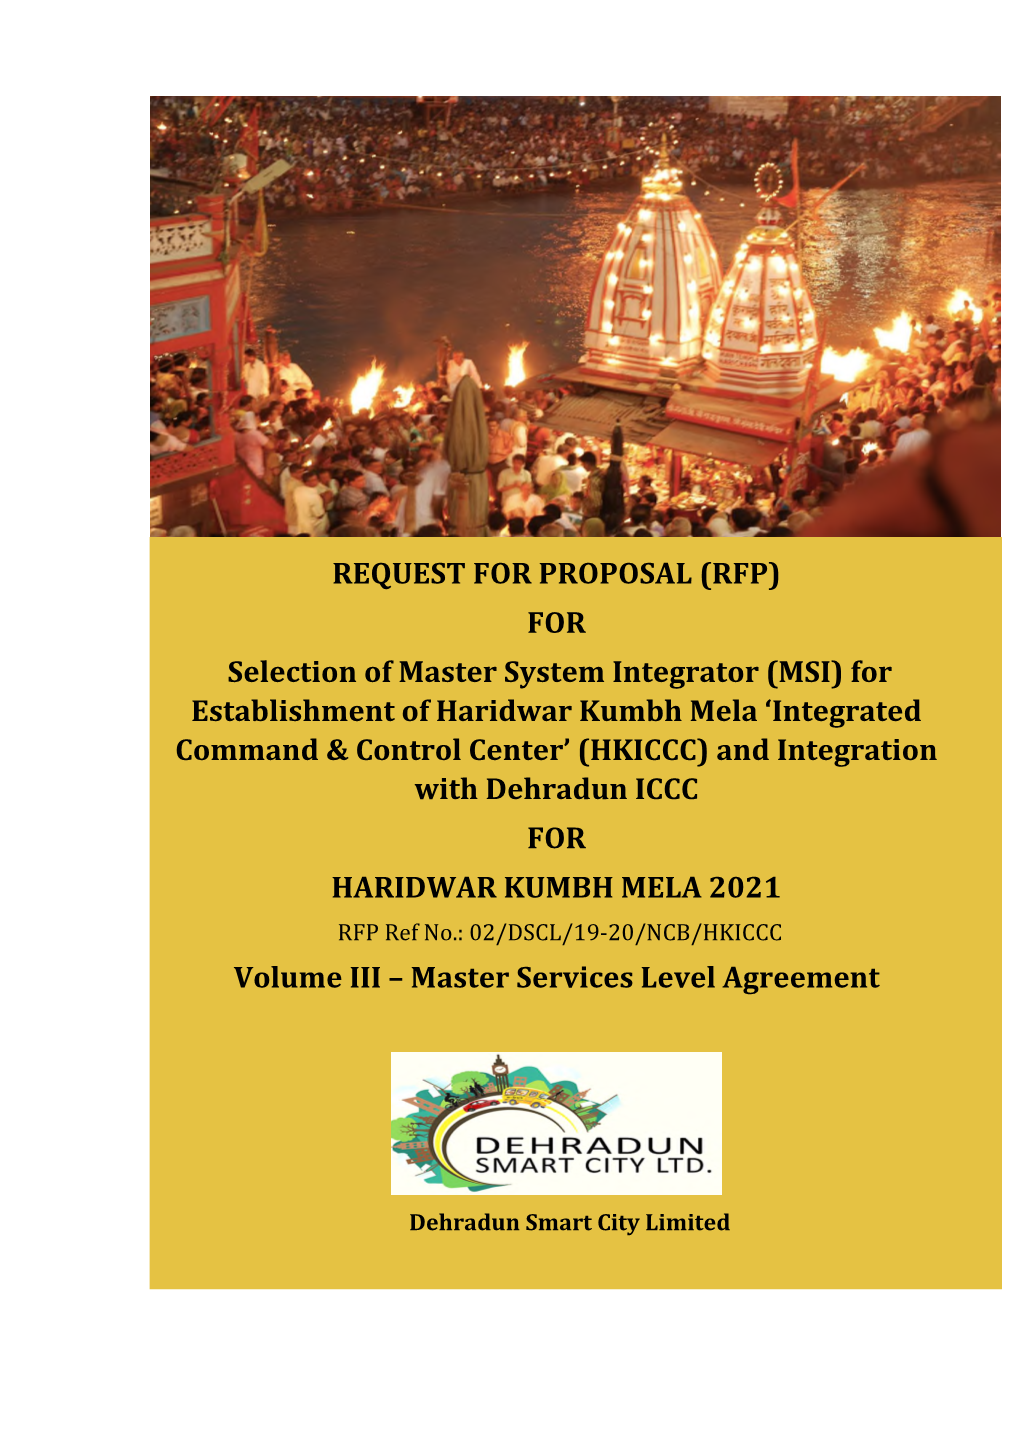 For Establishment of Haridwar Kumbh Mela